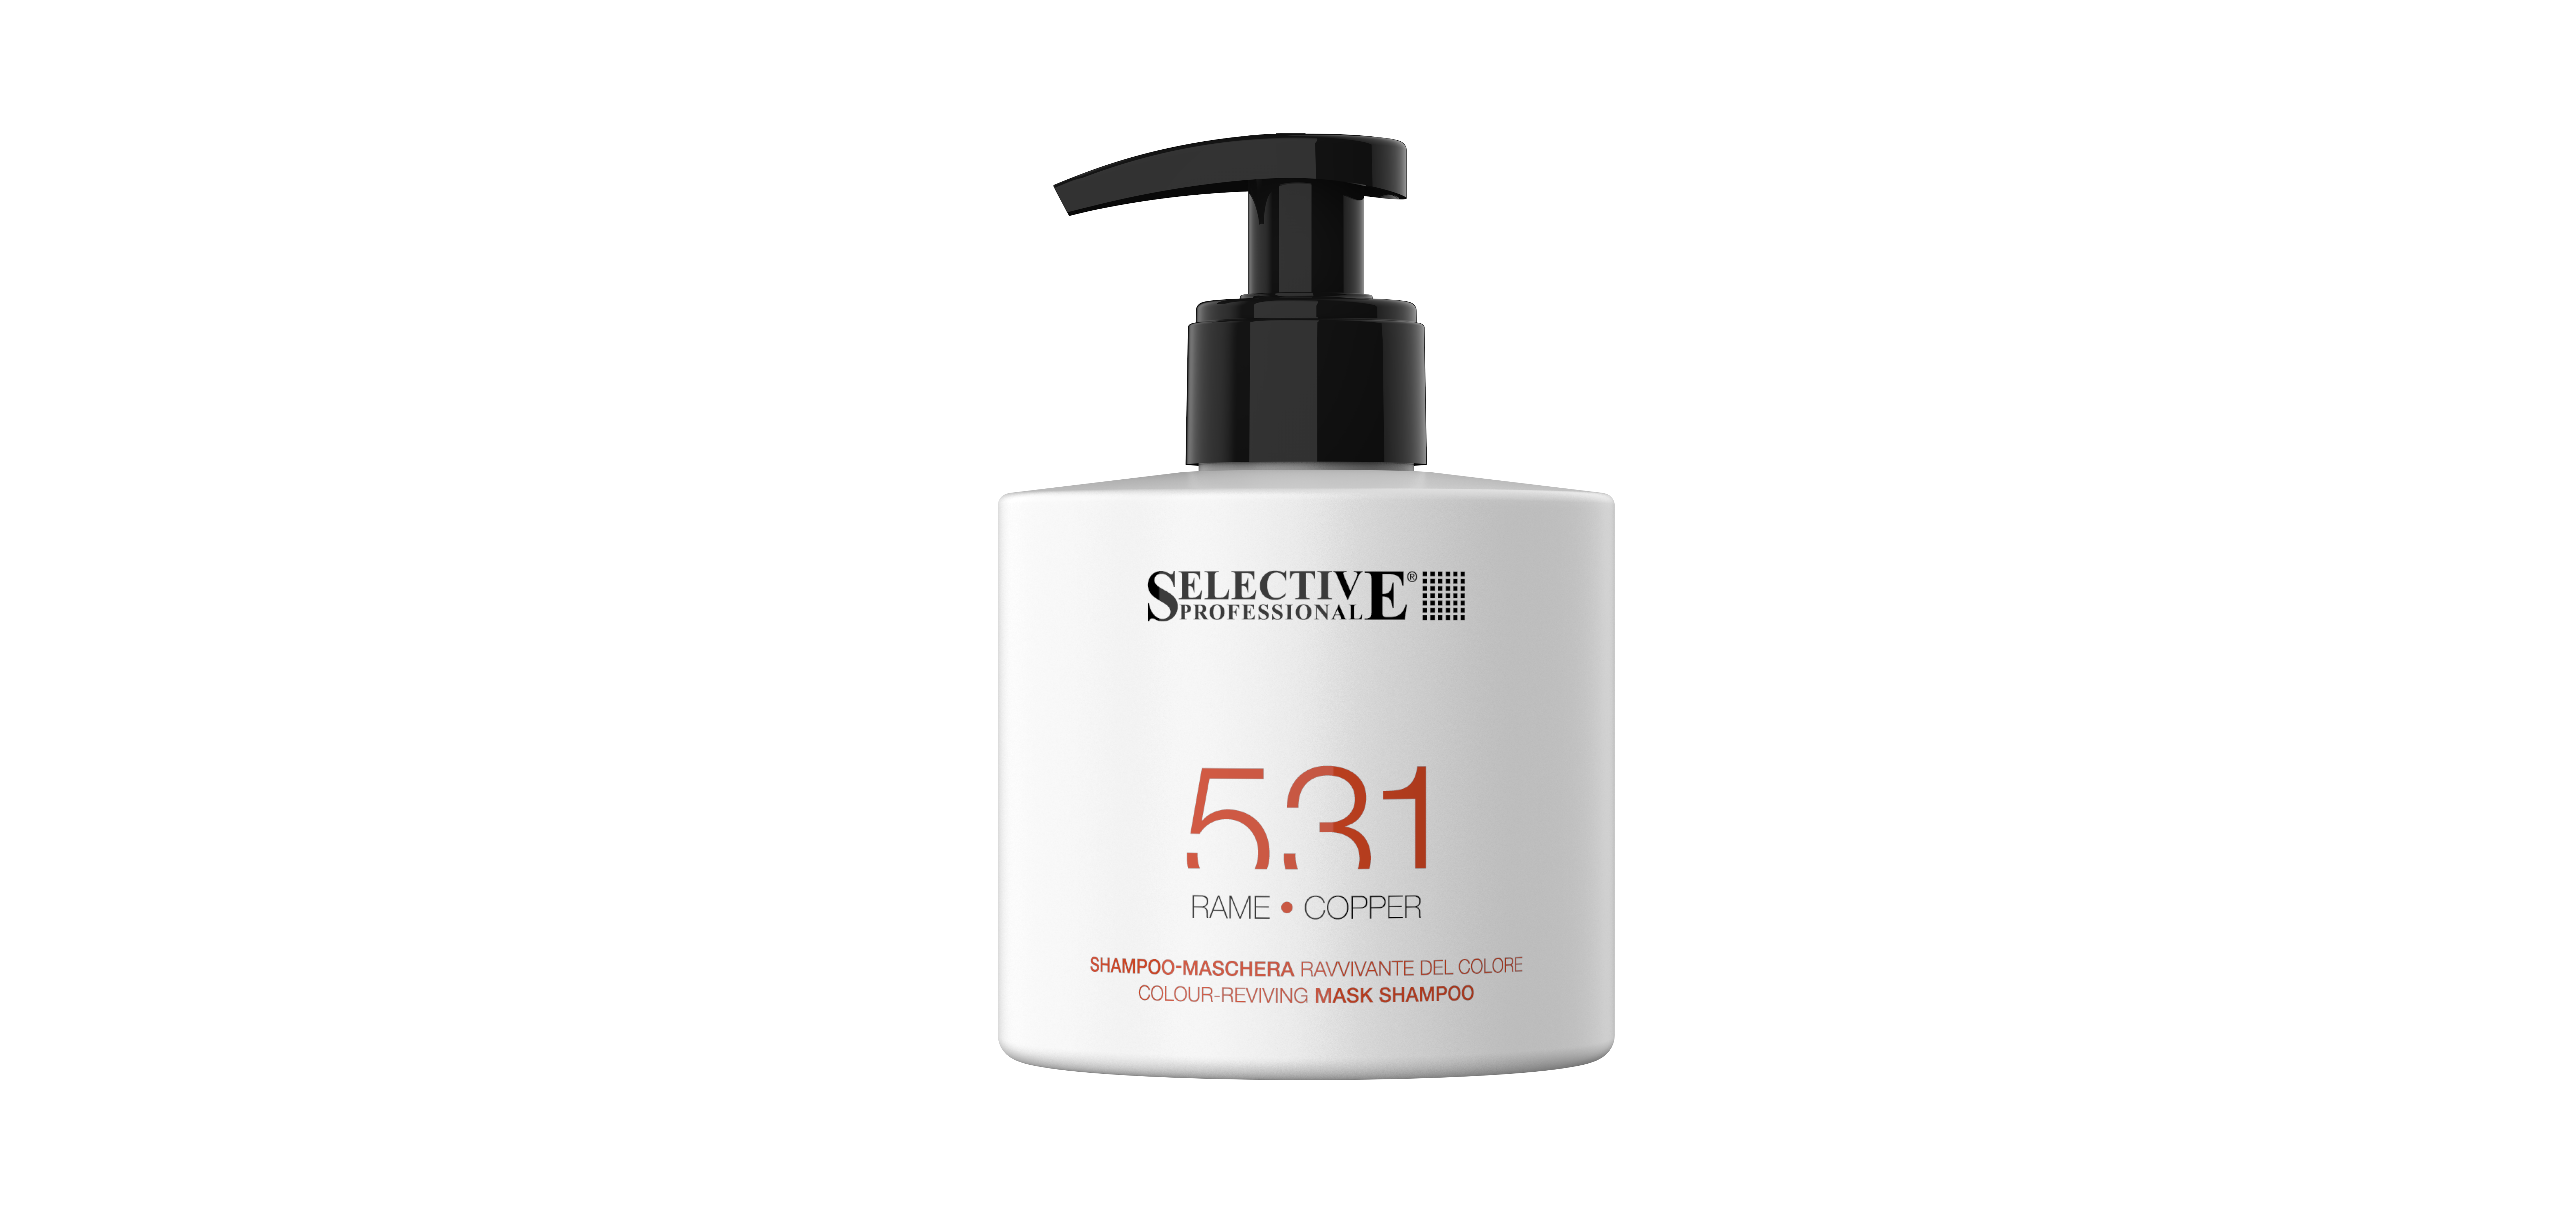 Шампуни для волос:  SELECTIVE PROFESSIONAL -  Шампунь - маска 531 для возобновления цвета волос, Медный (275 мл)